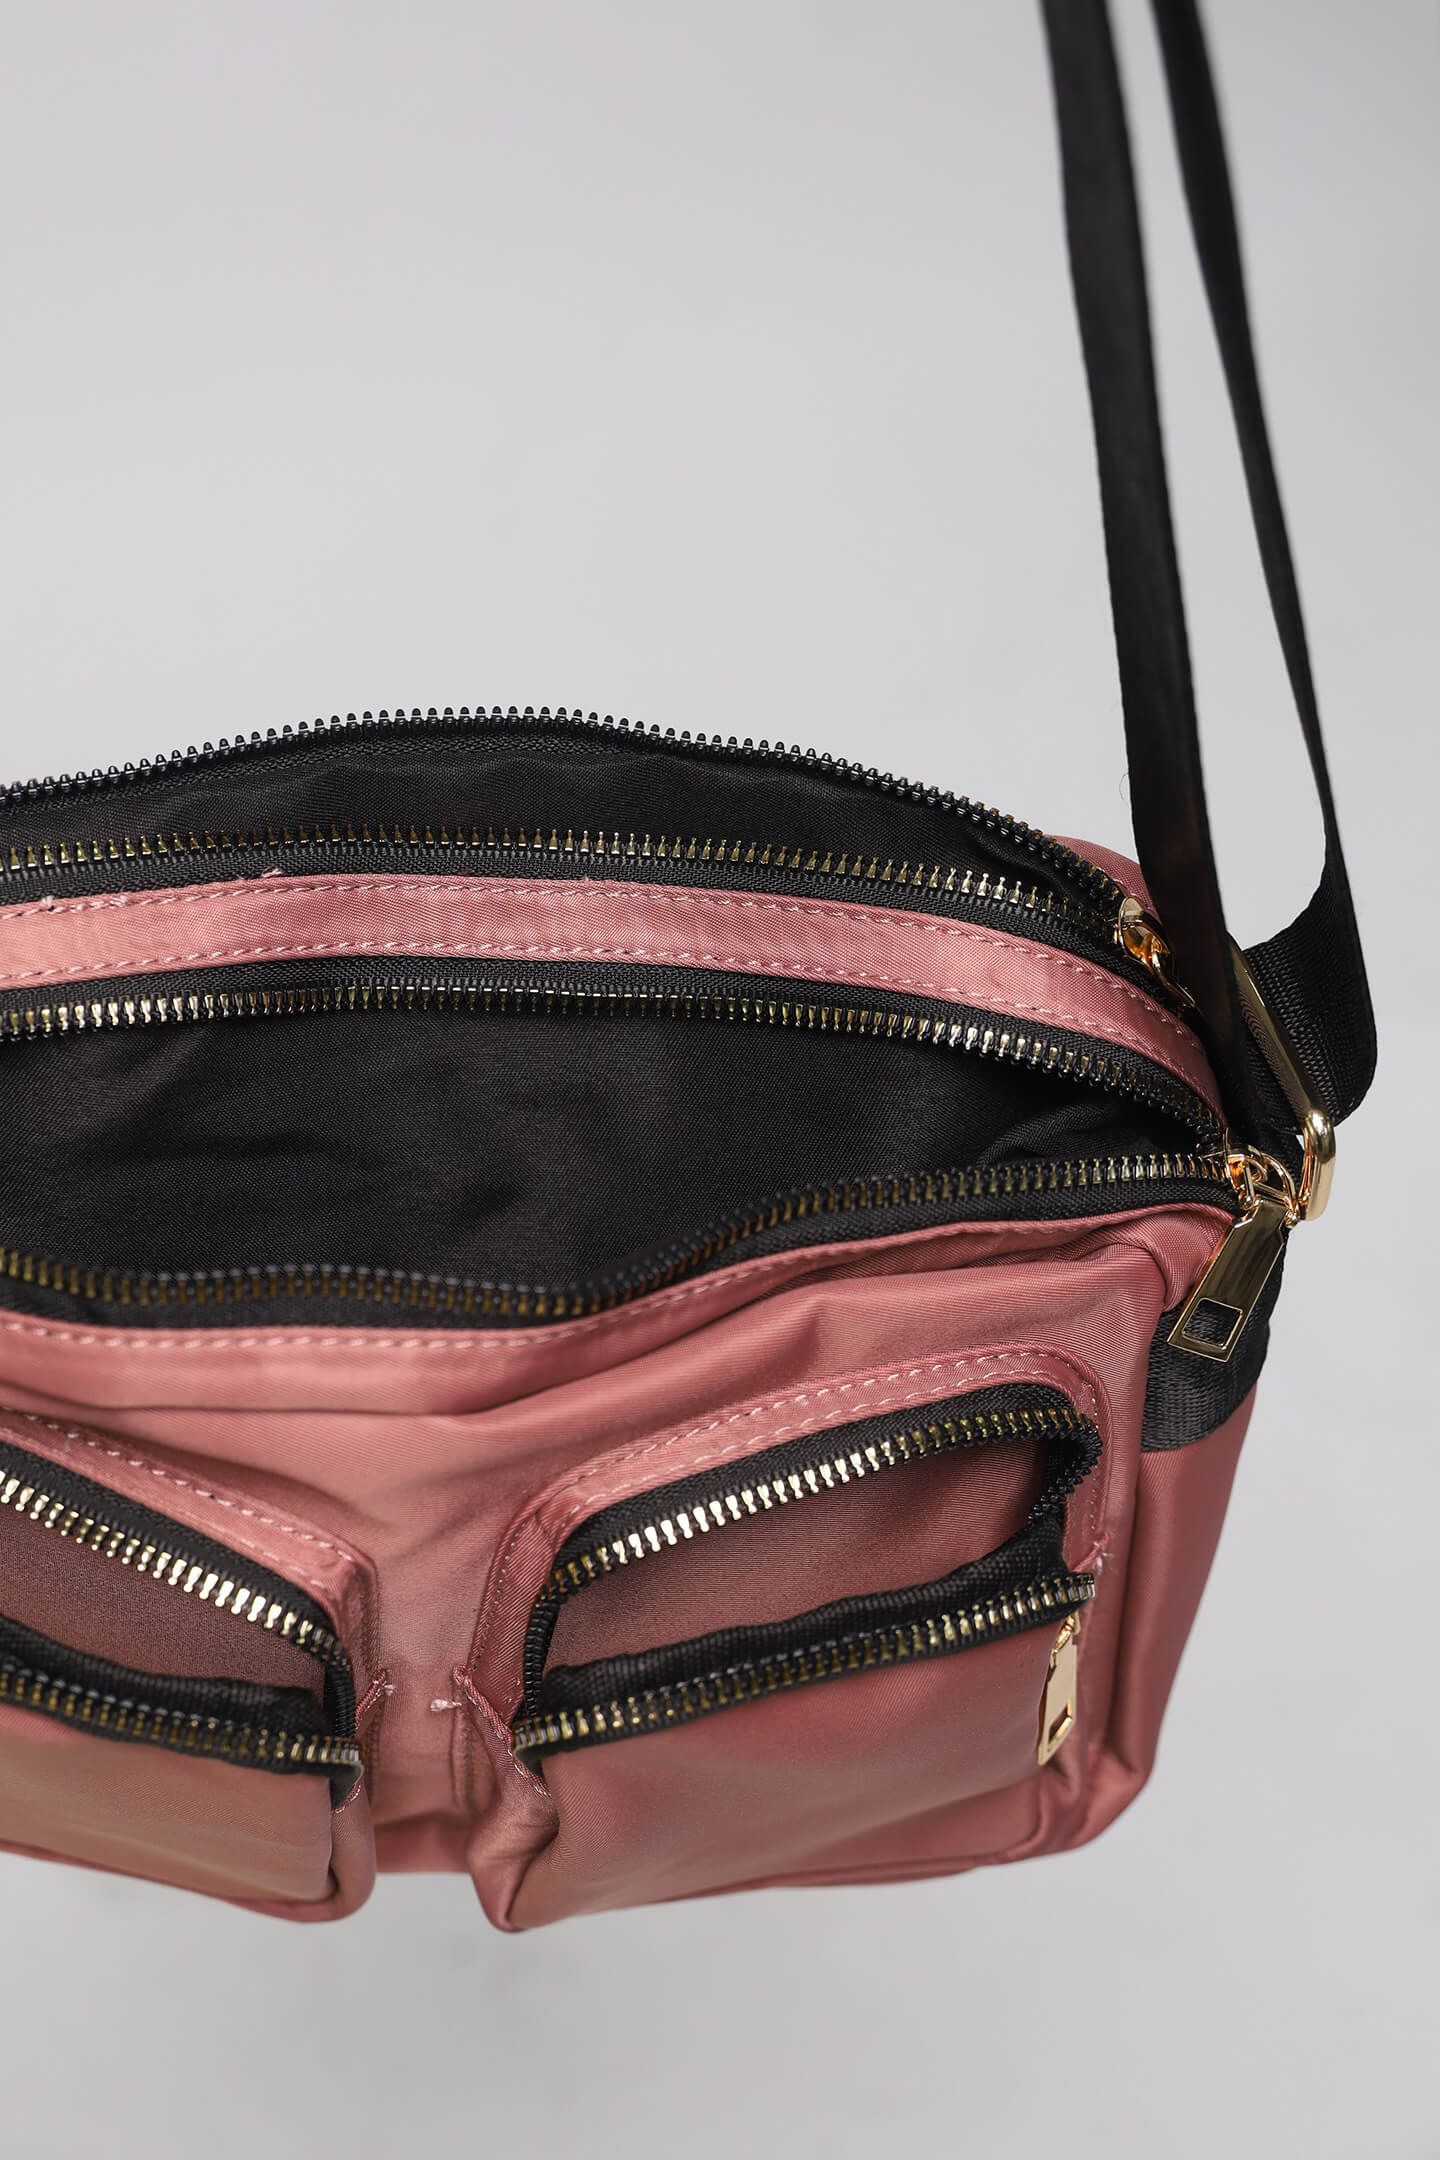 Melly Pocket Bag in Pink